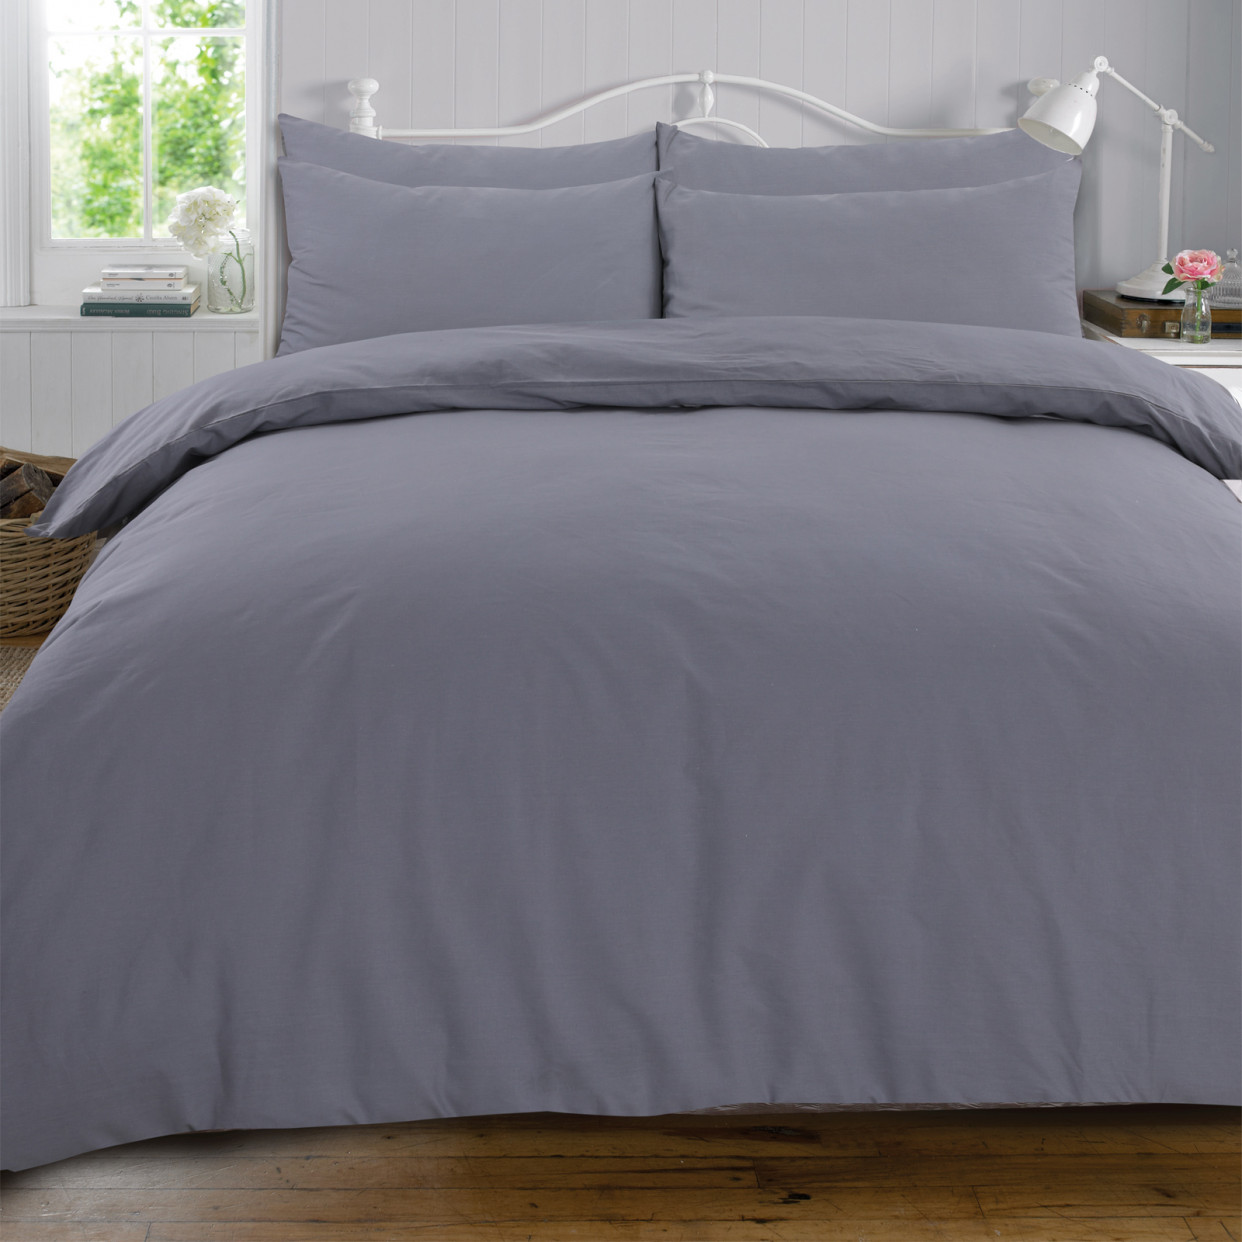 Highams Plain 100% Cotton Complete Duvet Cover Pillowcase Sheet Set, Grey - Double>